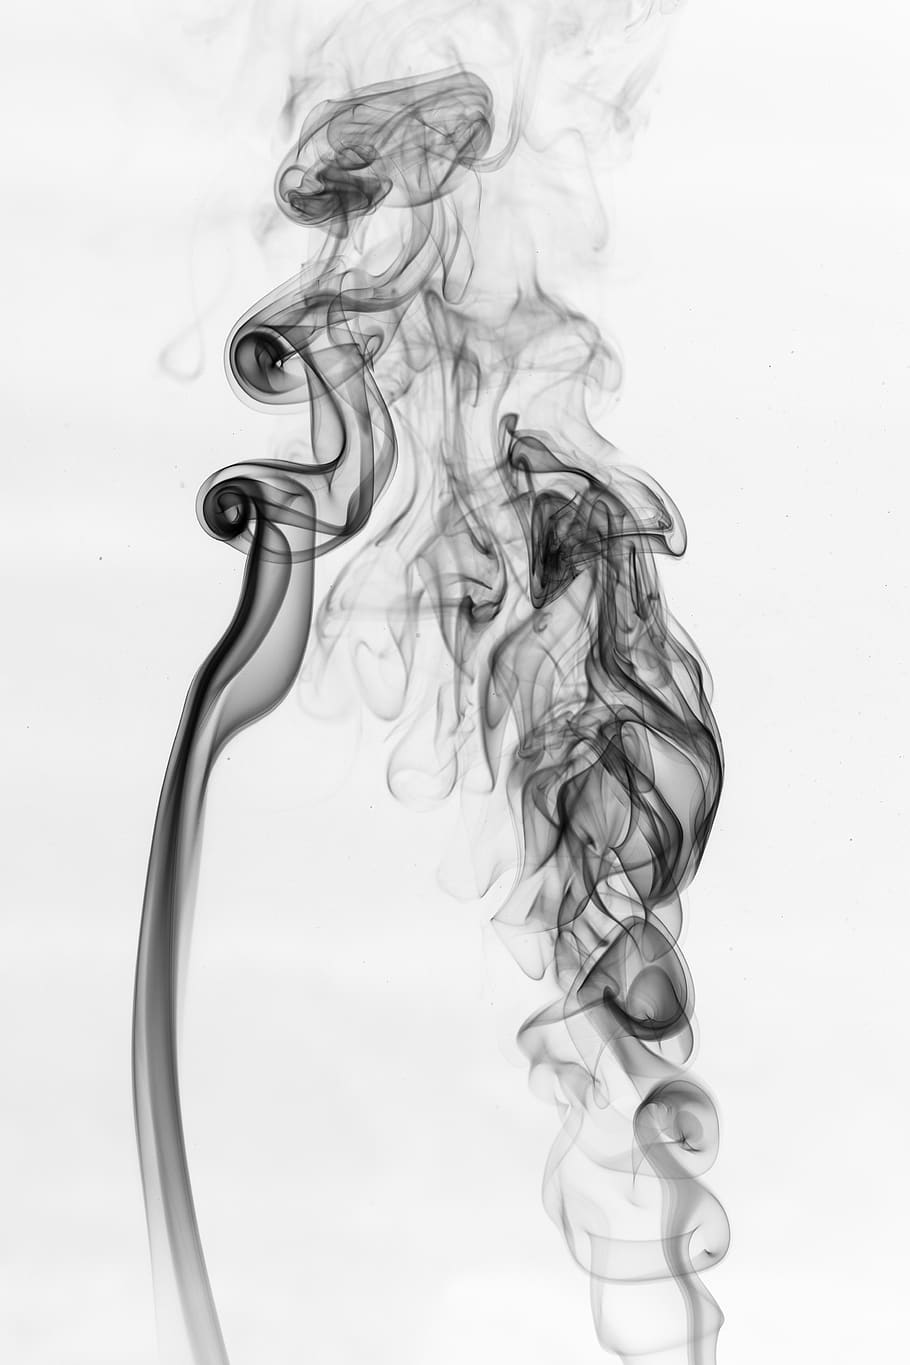 humo, fuego, ardor, encendedor, llama, incienso, tiro del estudio, humo - estructura física, fondo blanco, movimiento